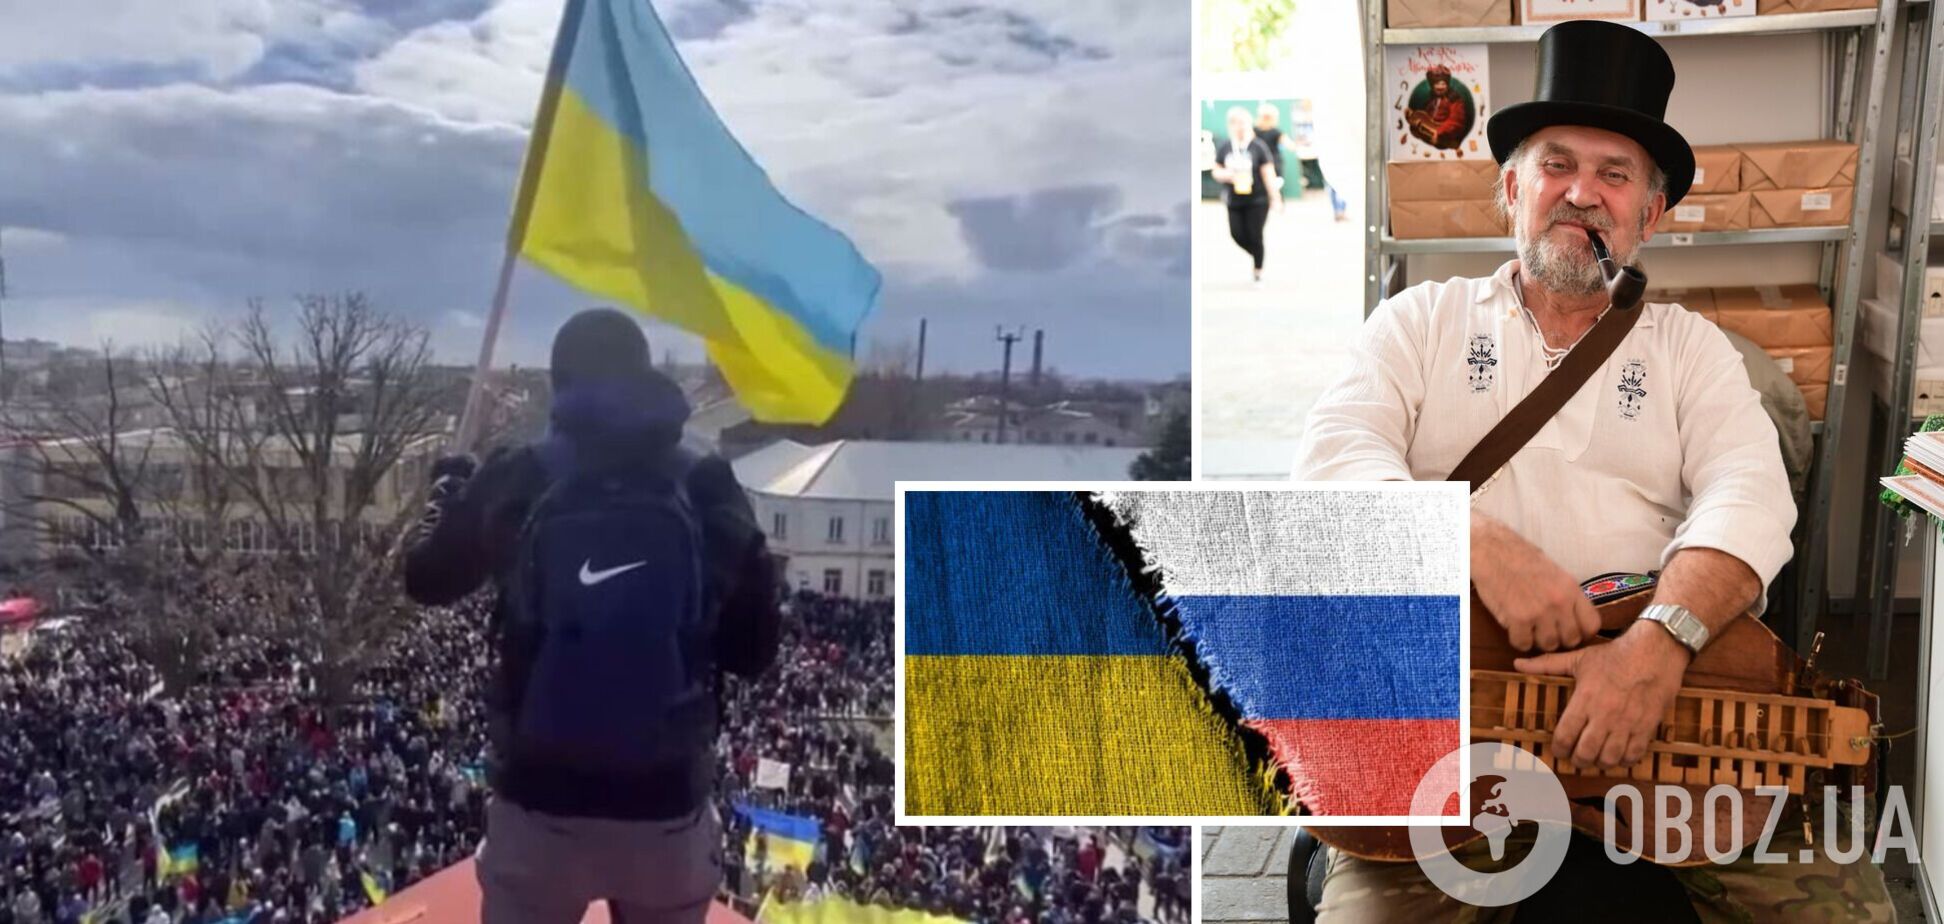 'Здесь – набежали, там – украли'. Саша Лирник объяснил, почему украинцы привязаны к своему дому, а у россиян нет такой тяги